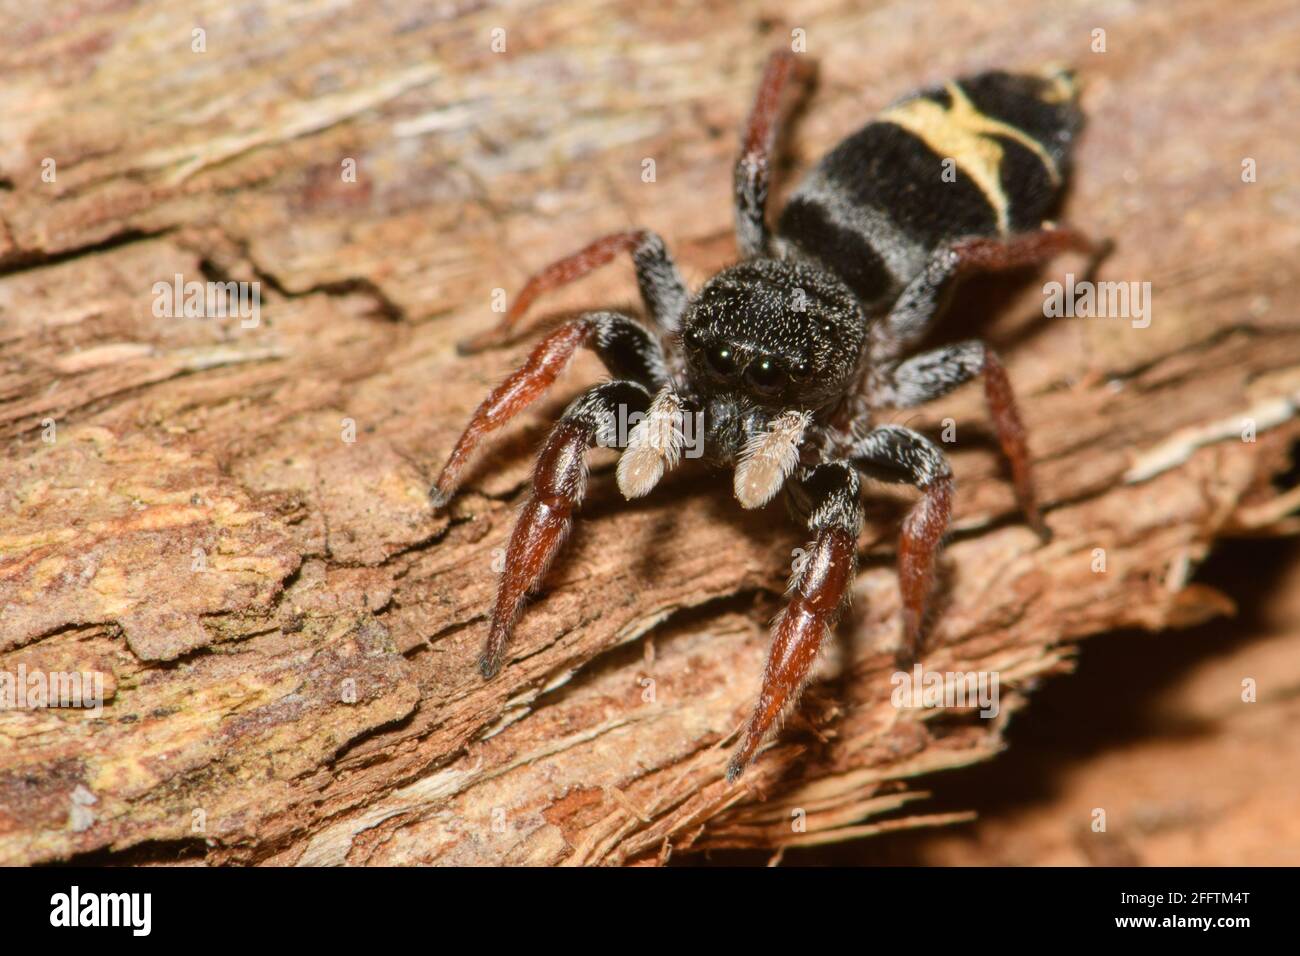 Jovial Jumping Spider. Stockfoto